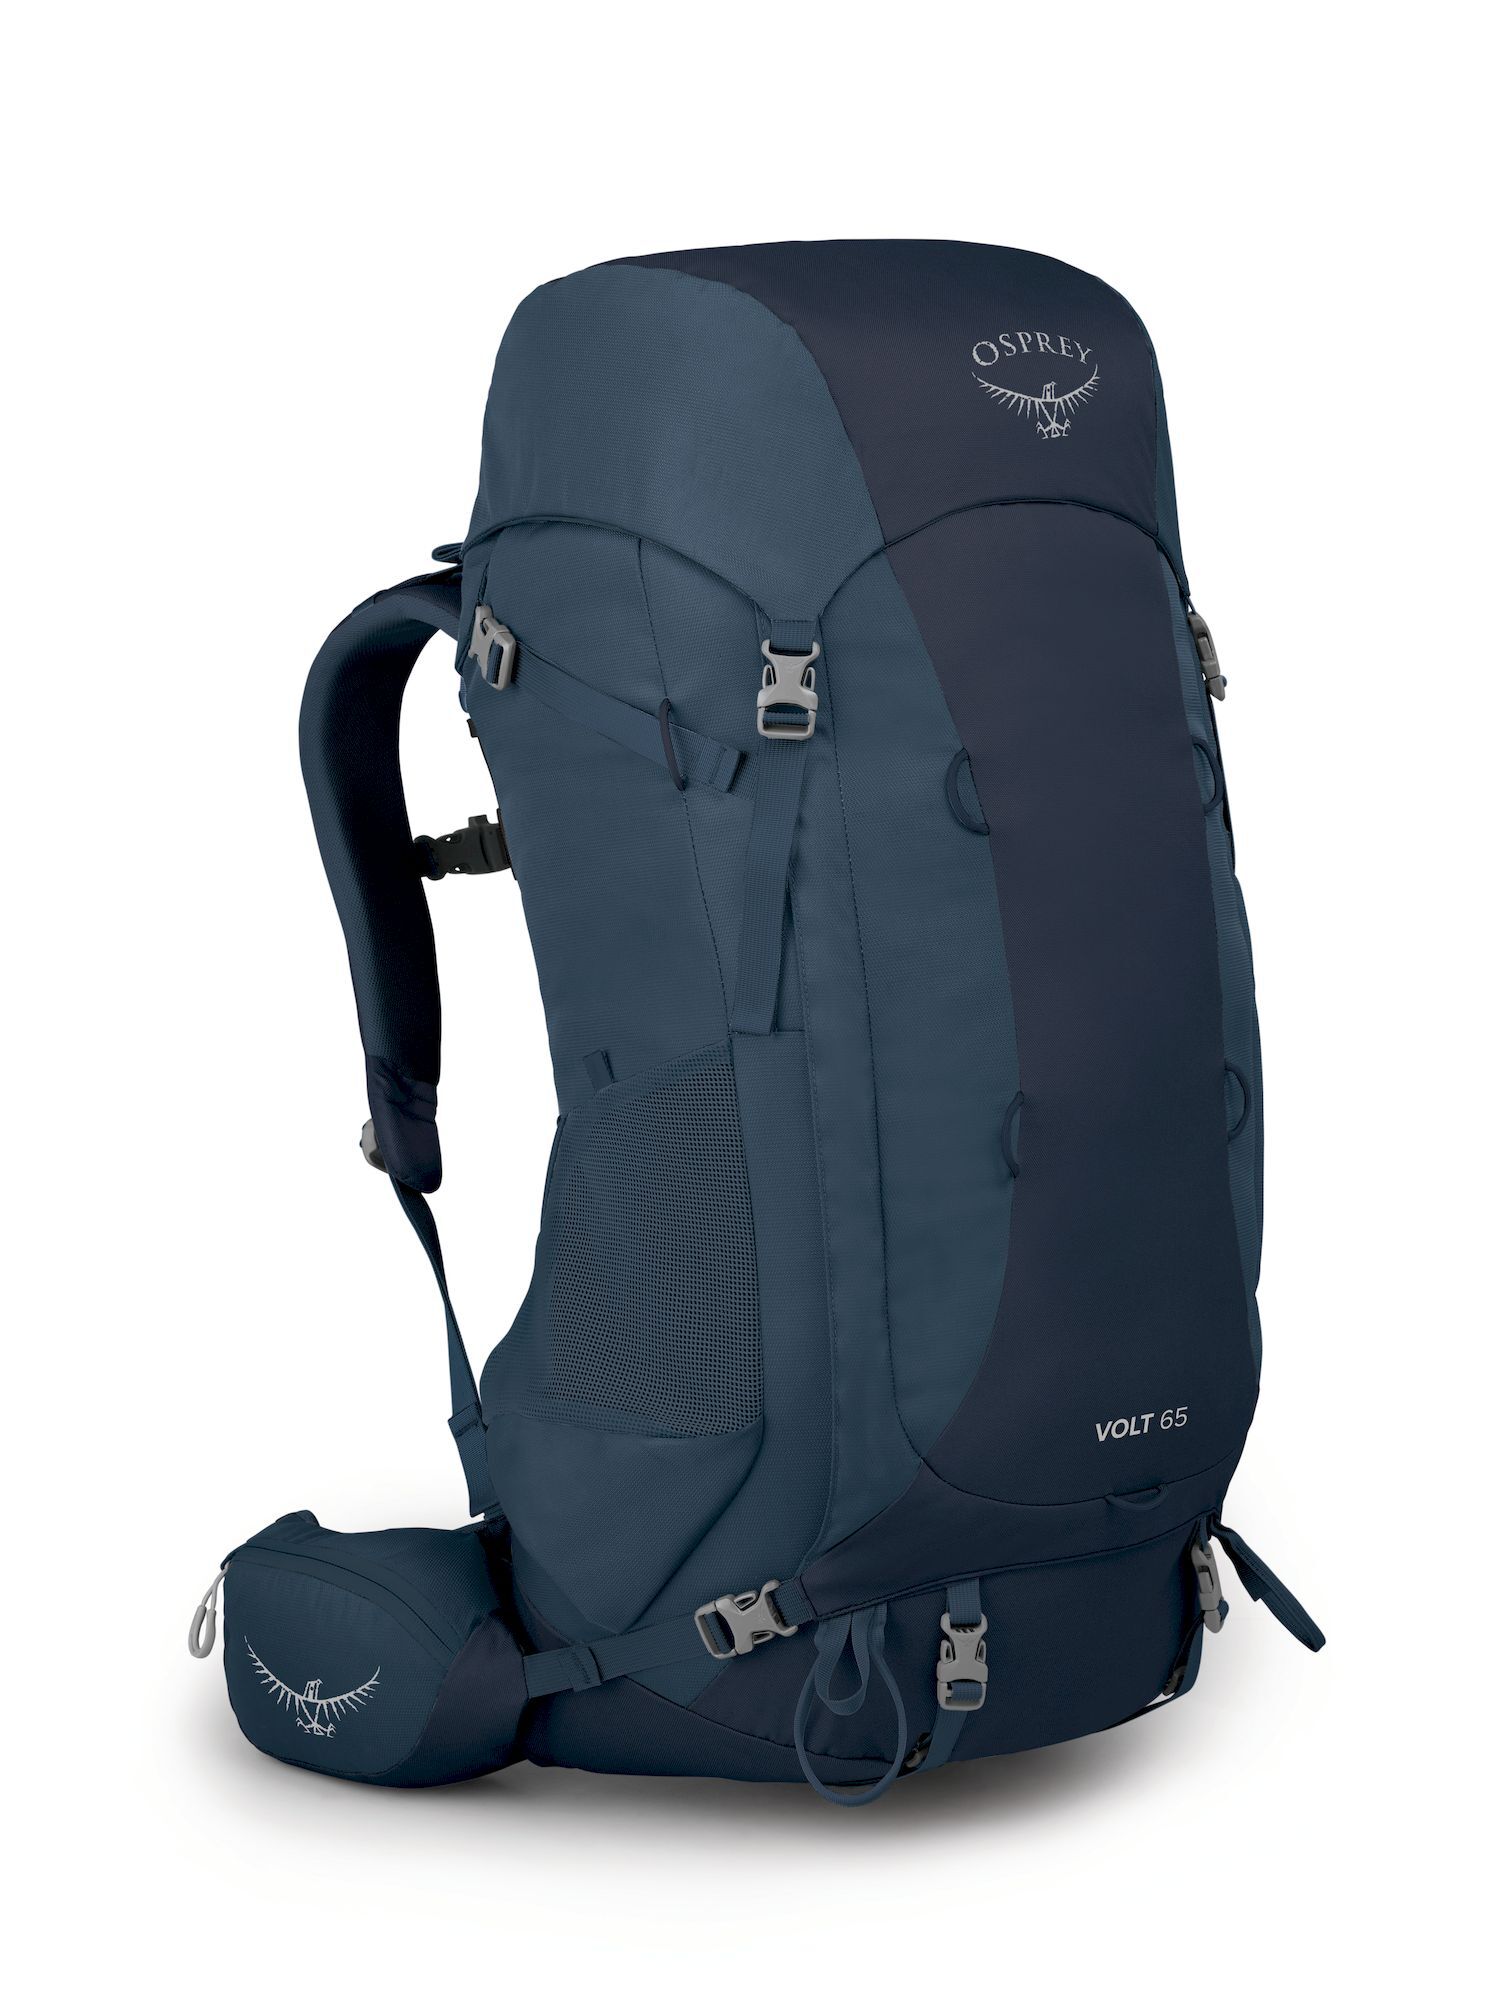 Osprey Volt 65 - Hiking backpack - Men's | Hardloop